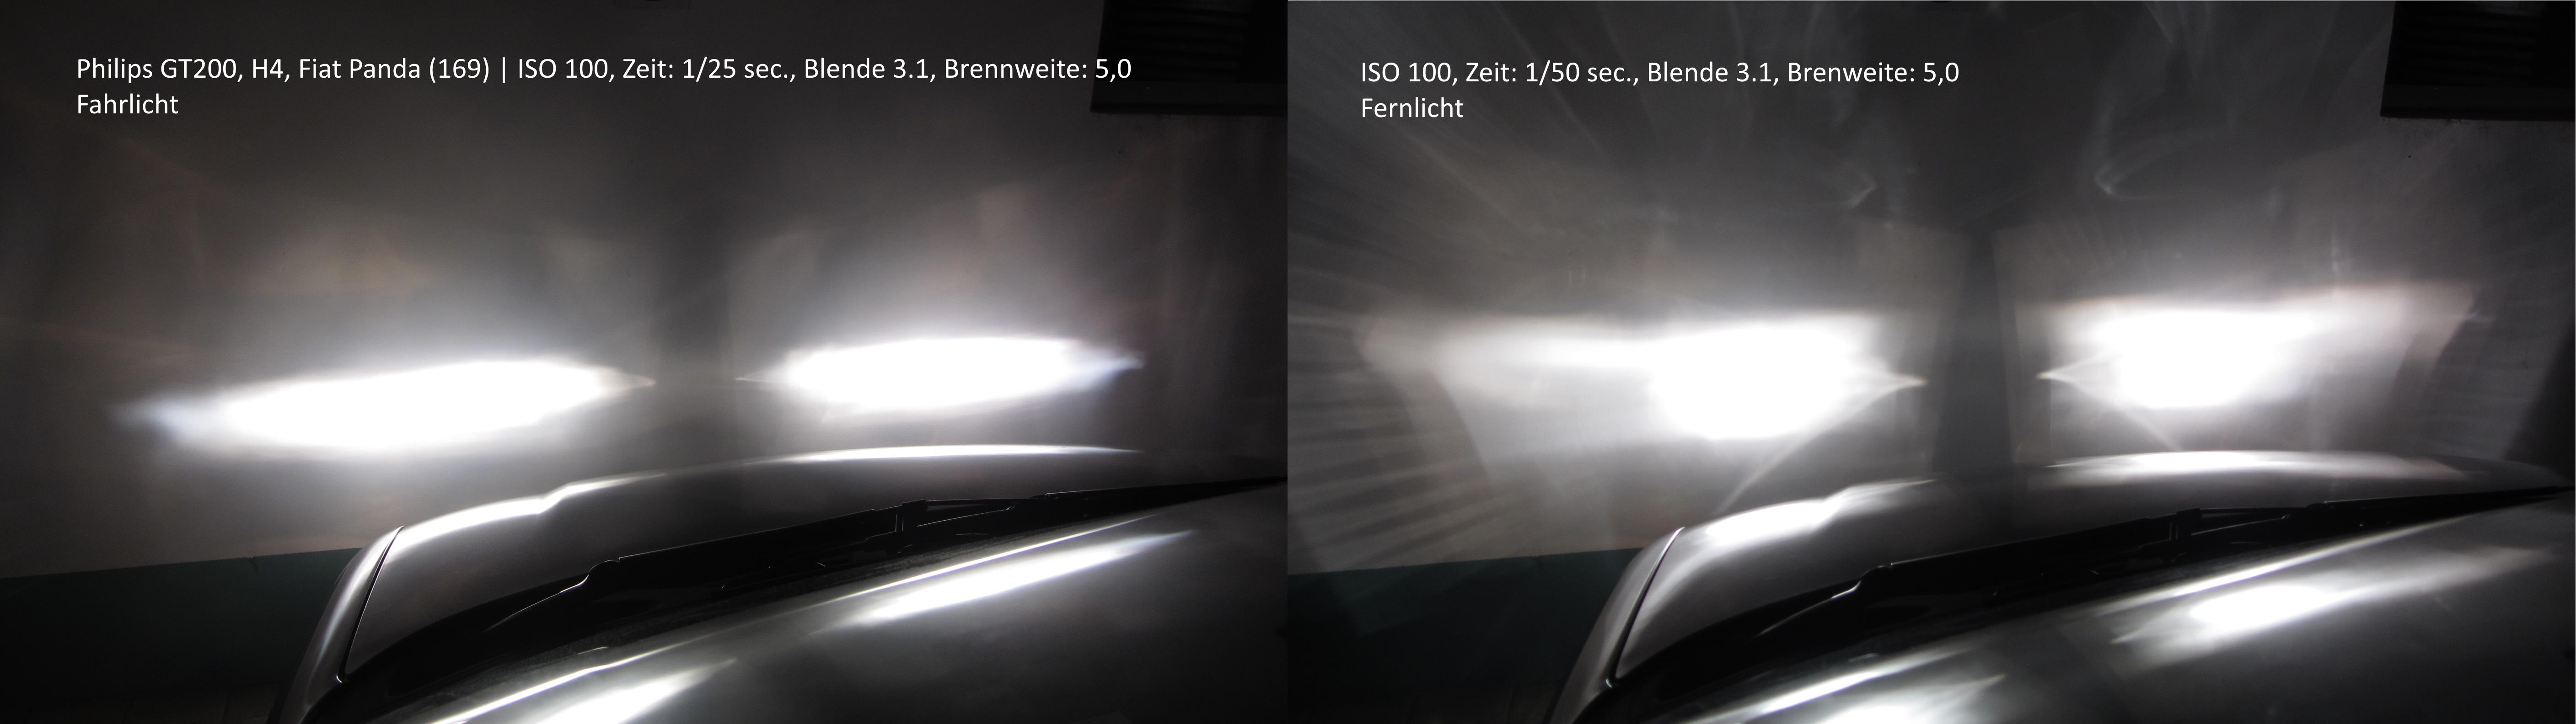 Dieses Osram-Licht leuchtet 200 % heller: Darum ist Scheinwerfer